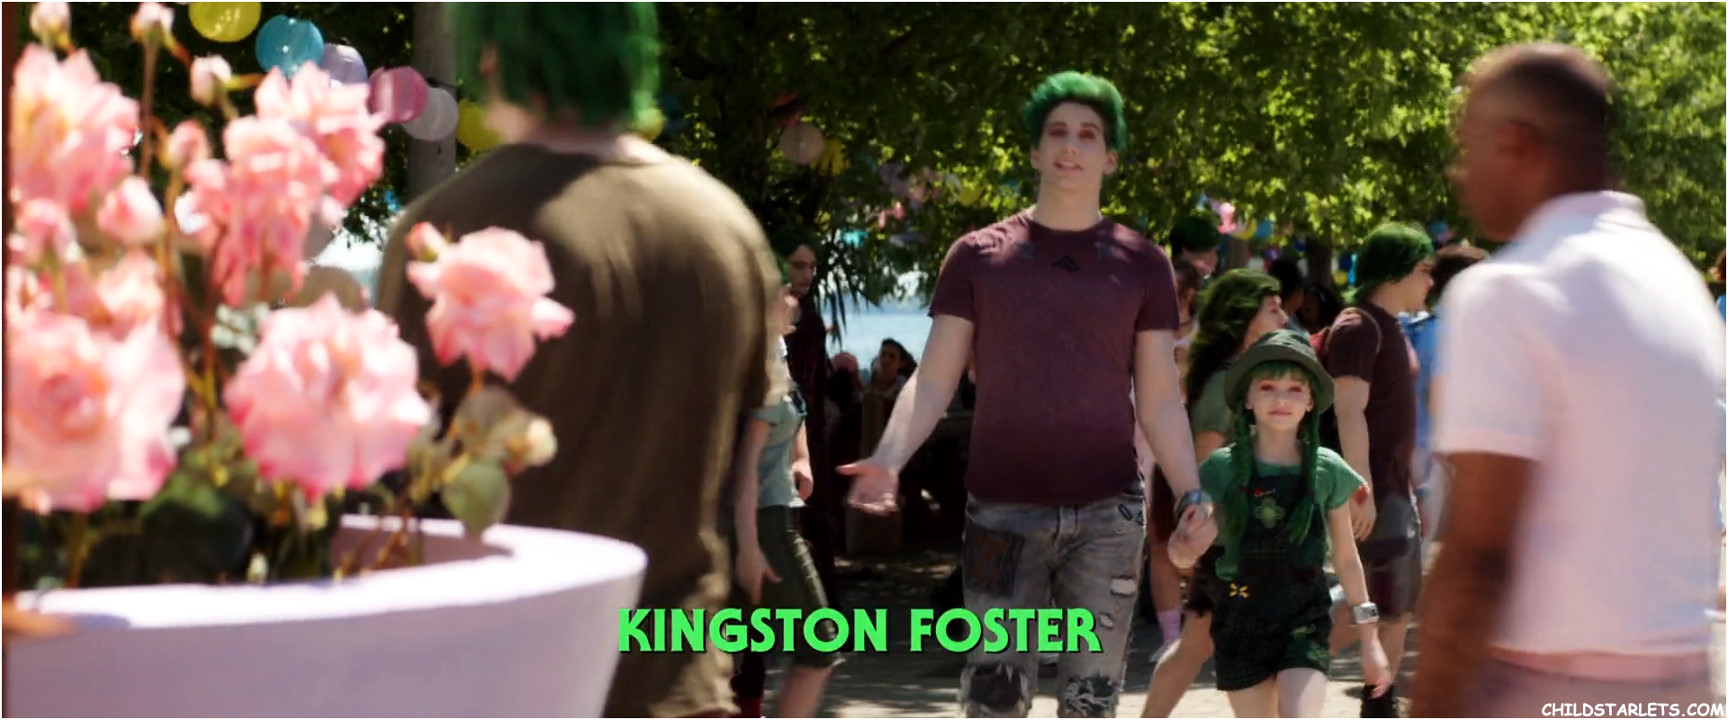 Kingston Foster "Zombies 2" - 2020/HD